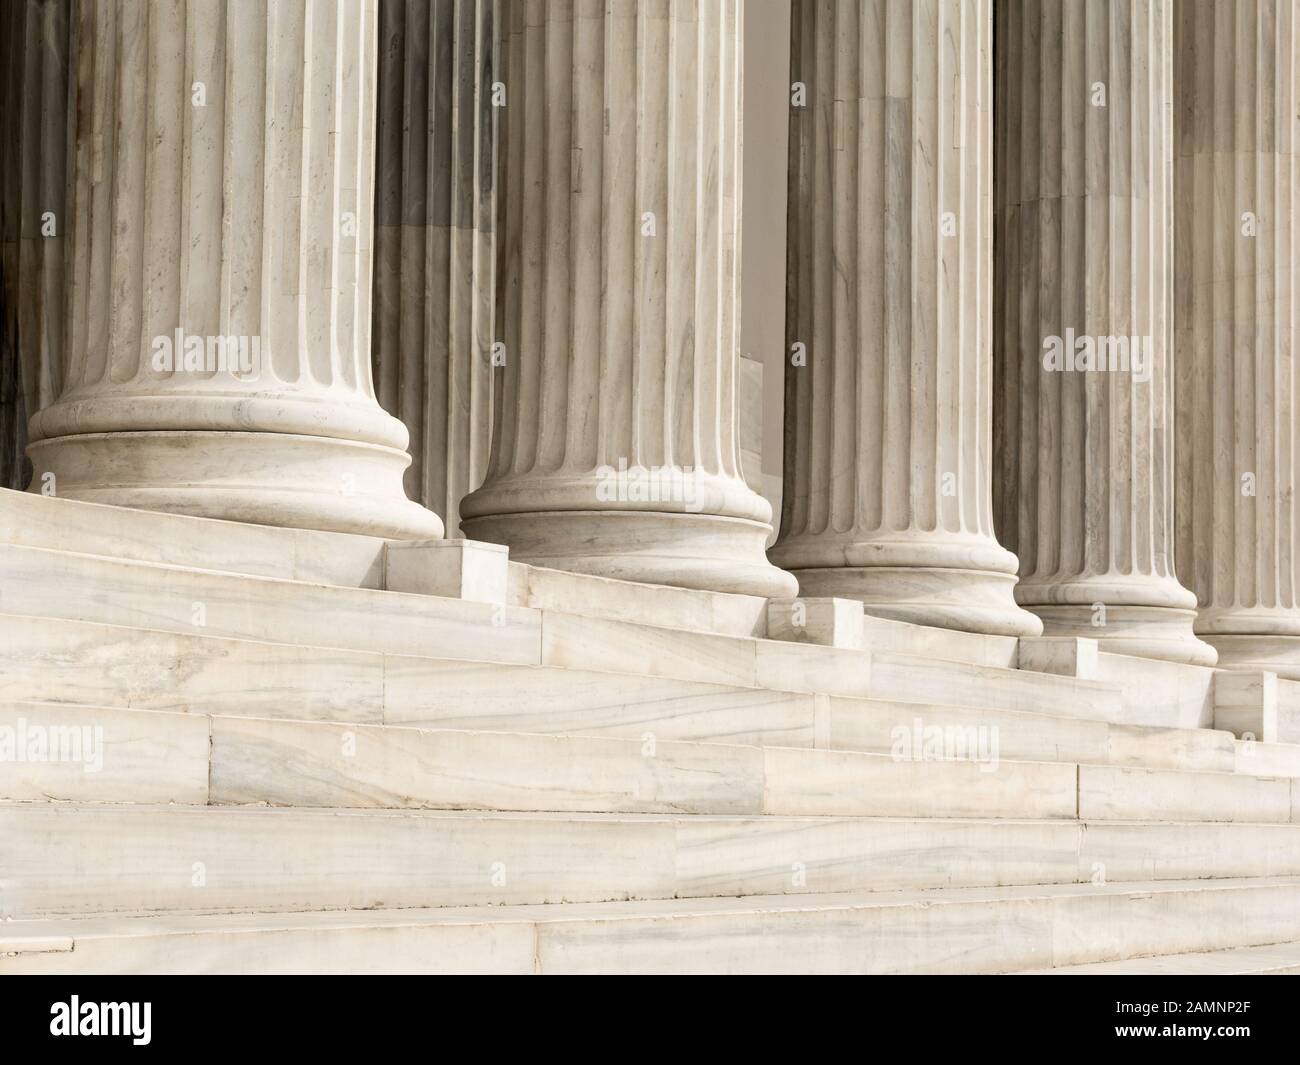 Dettaglio architettonico di gradini in marmo e colonne di ordine ionico Foto Stock